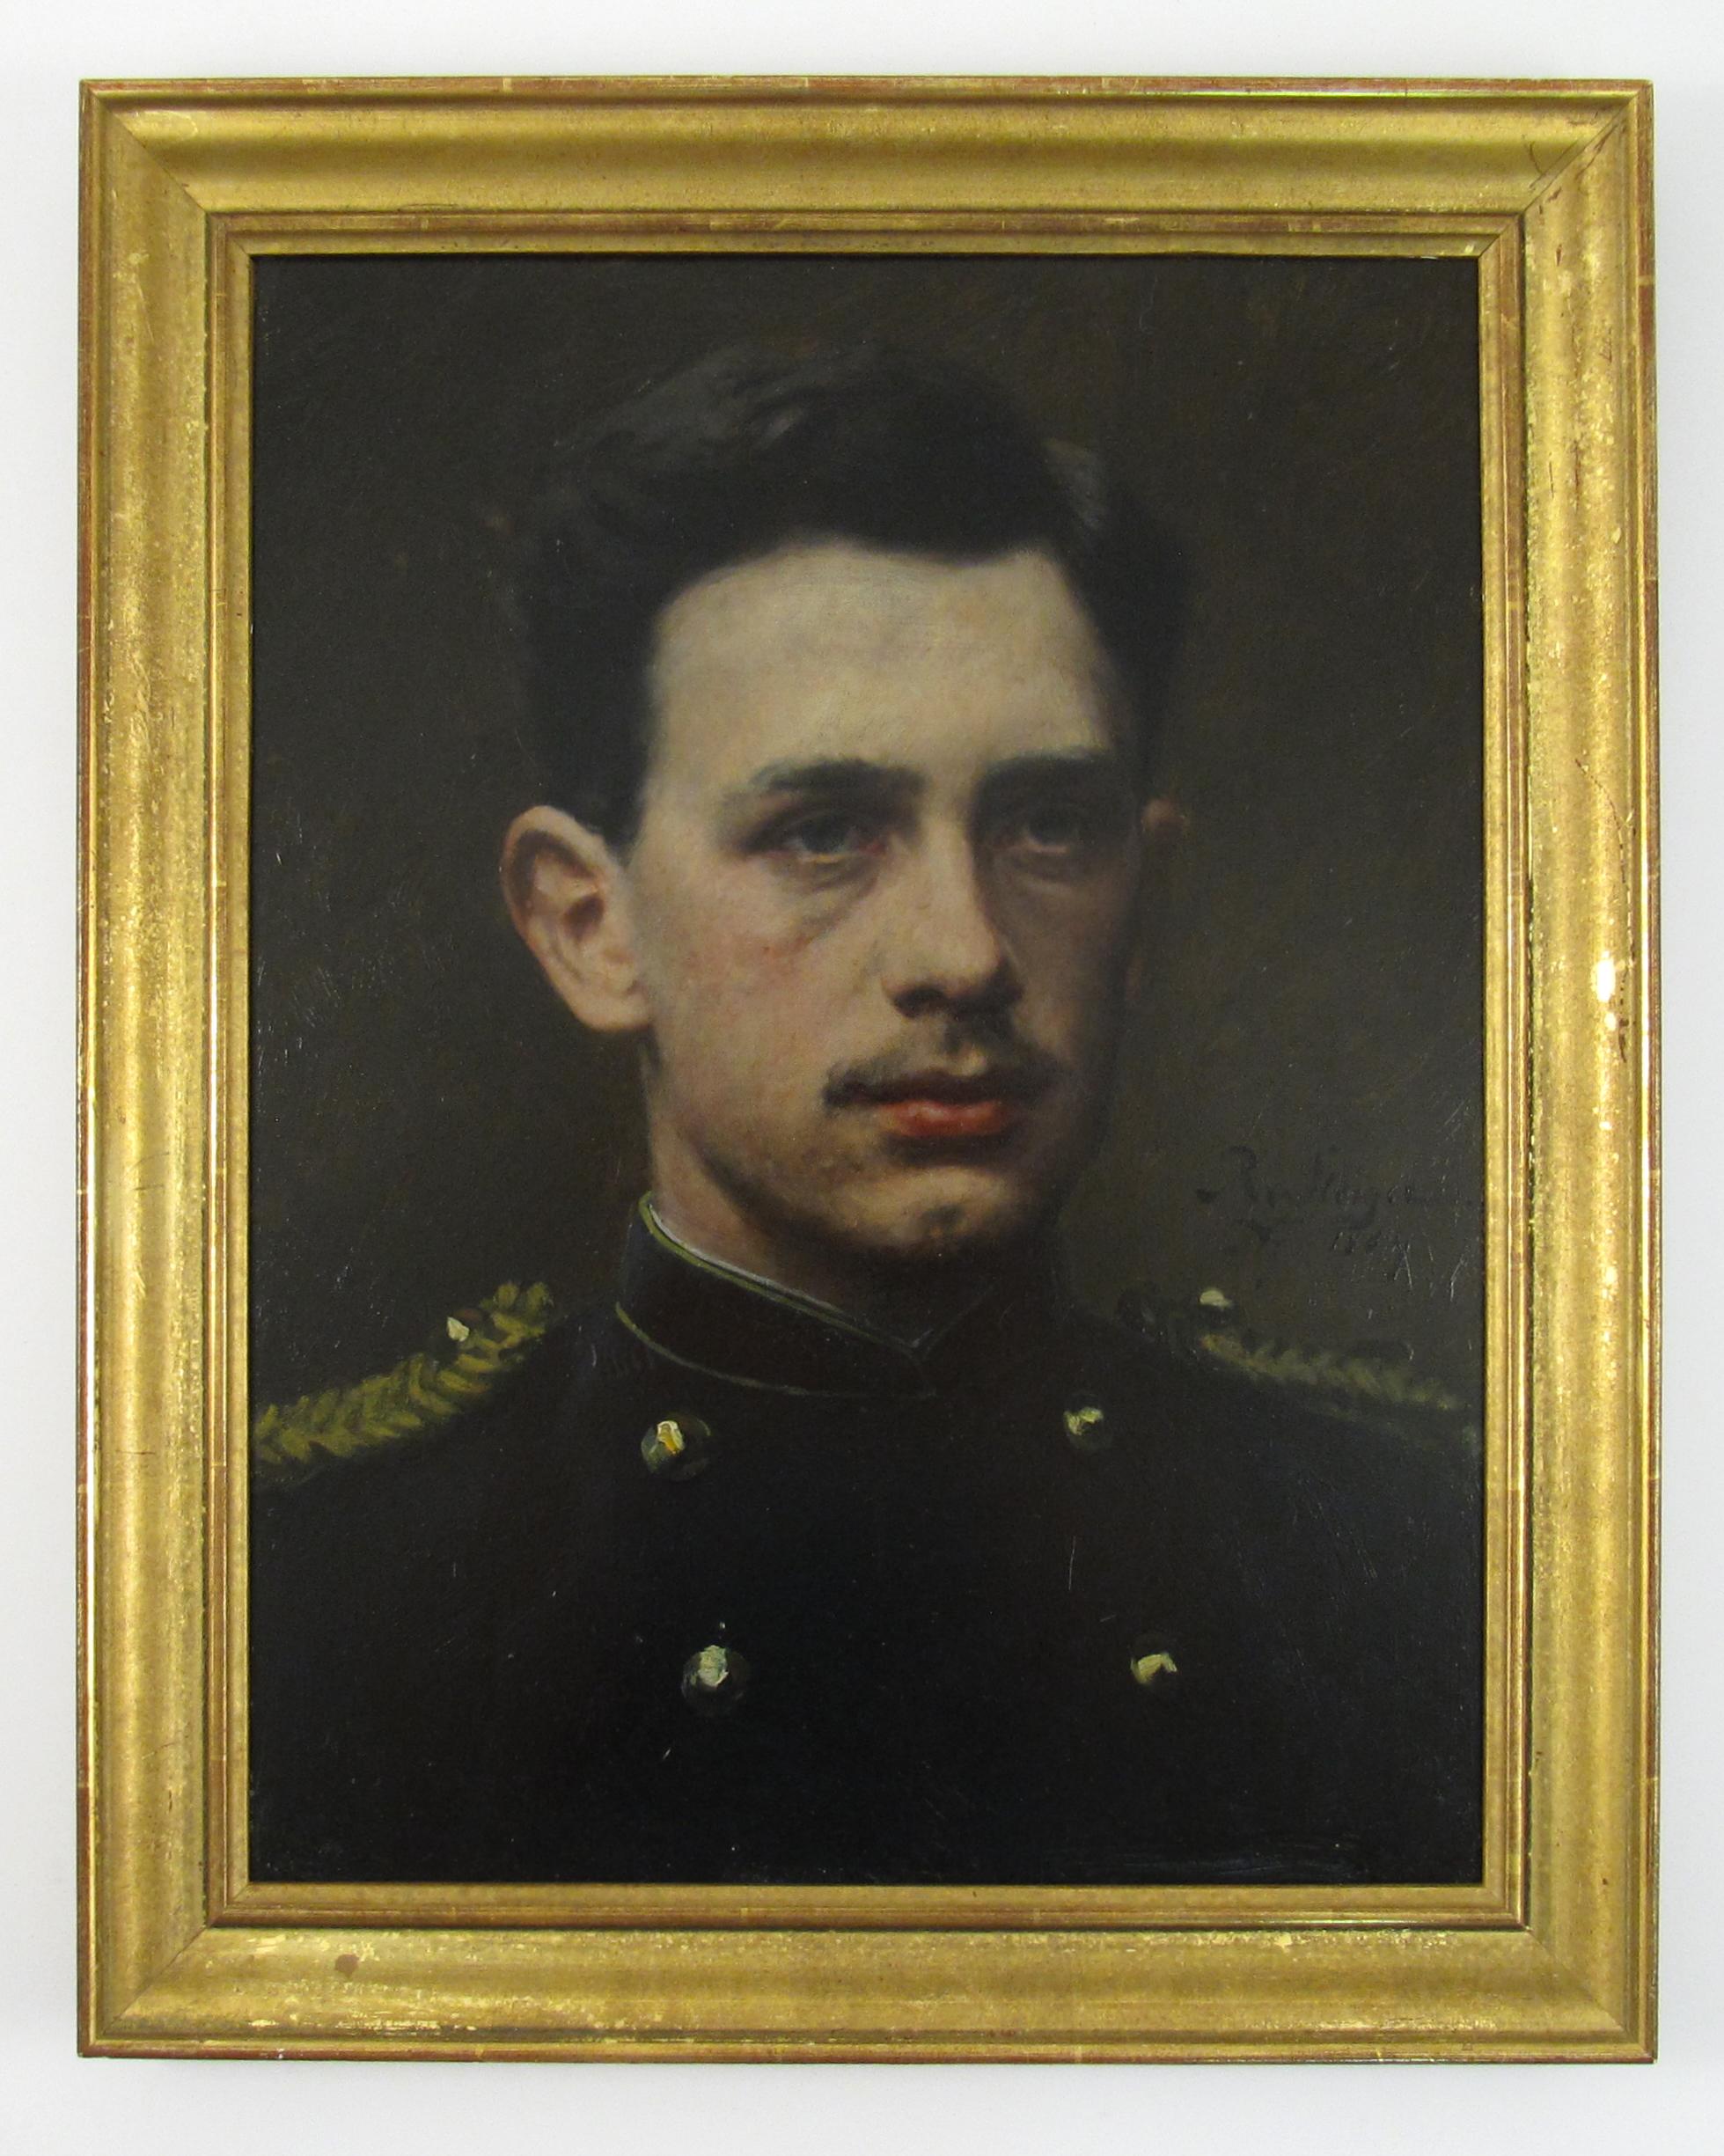 Robert von Steiger (1856-1941) Portrait de l'officier néerlandais A. v. Steiger, 1884, Hollande - Painting de Johann Ludwig Robert von Steiger